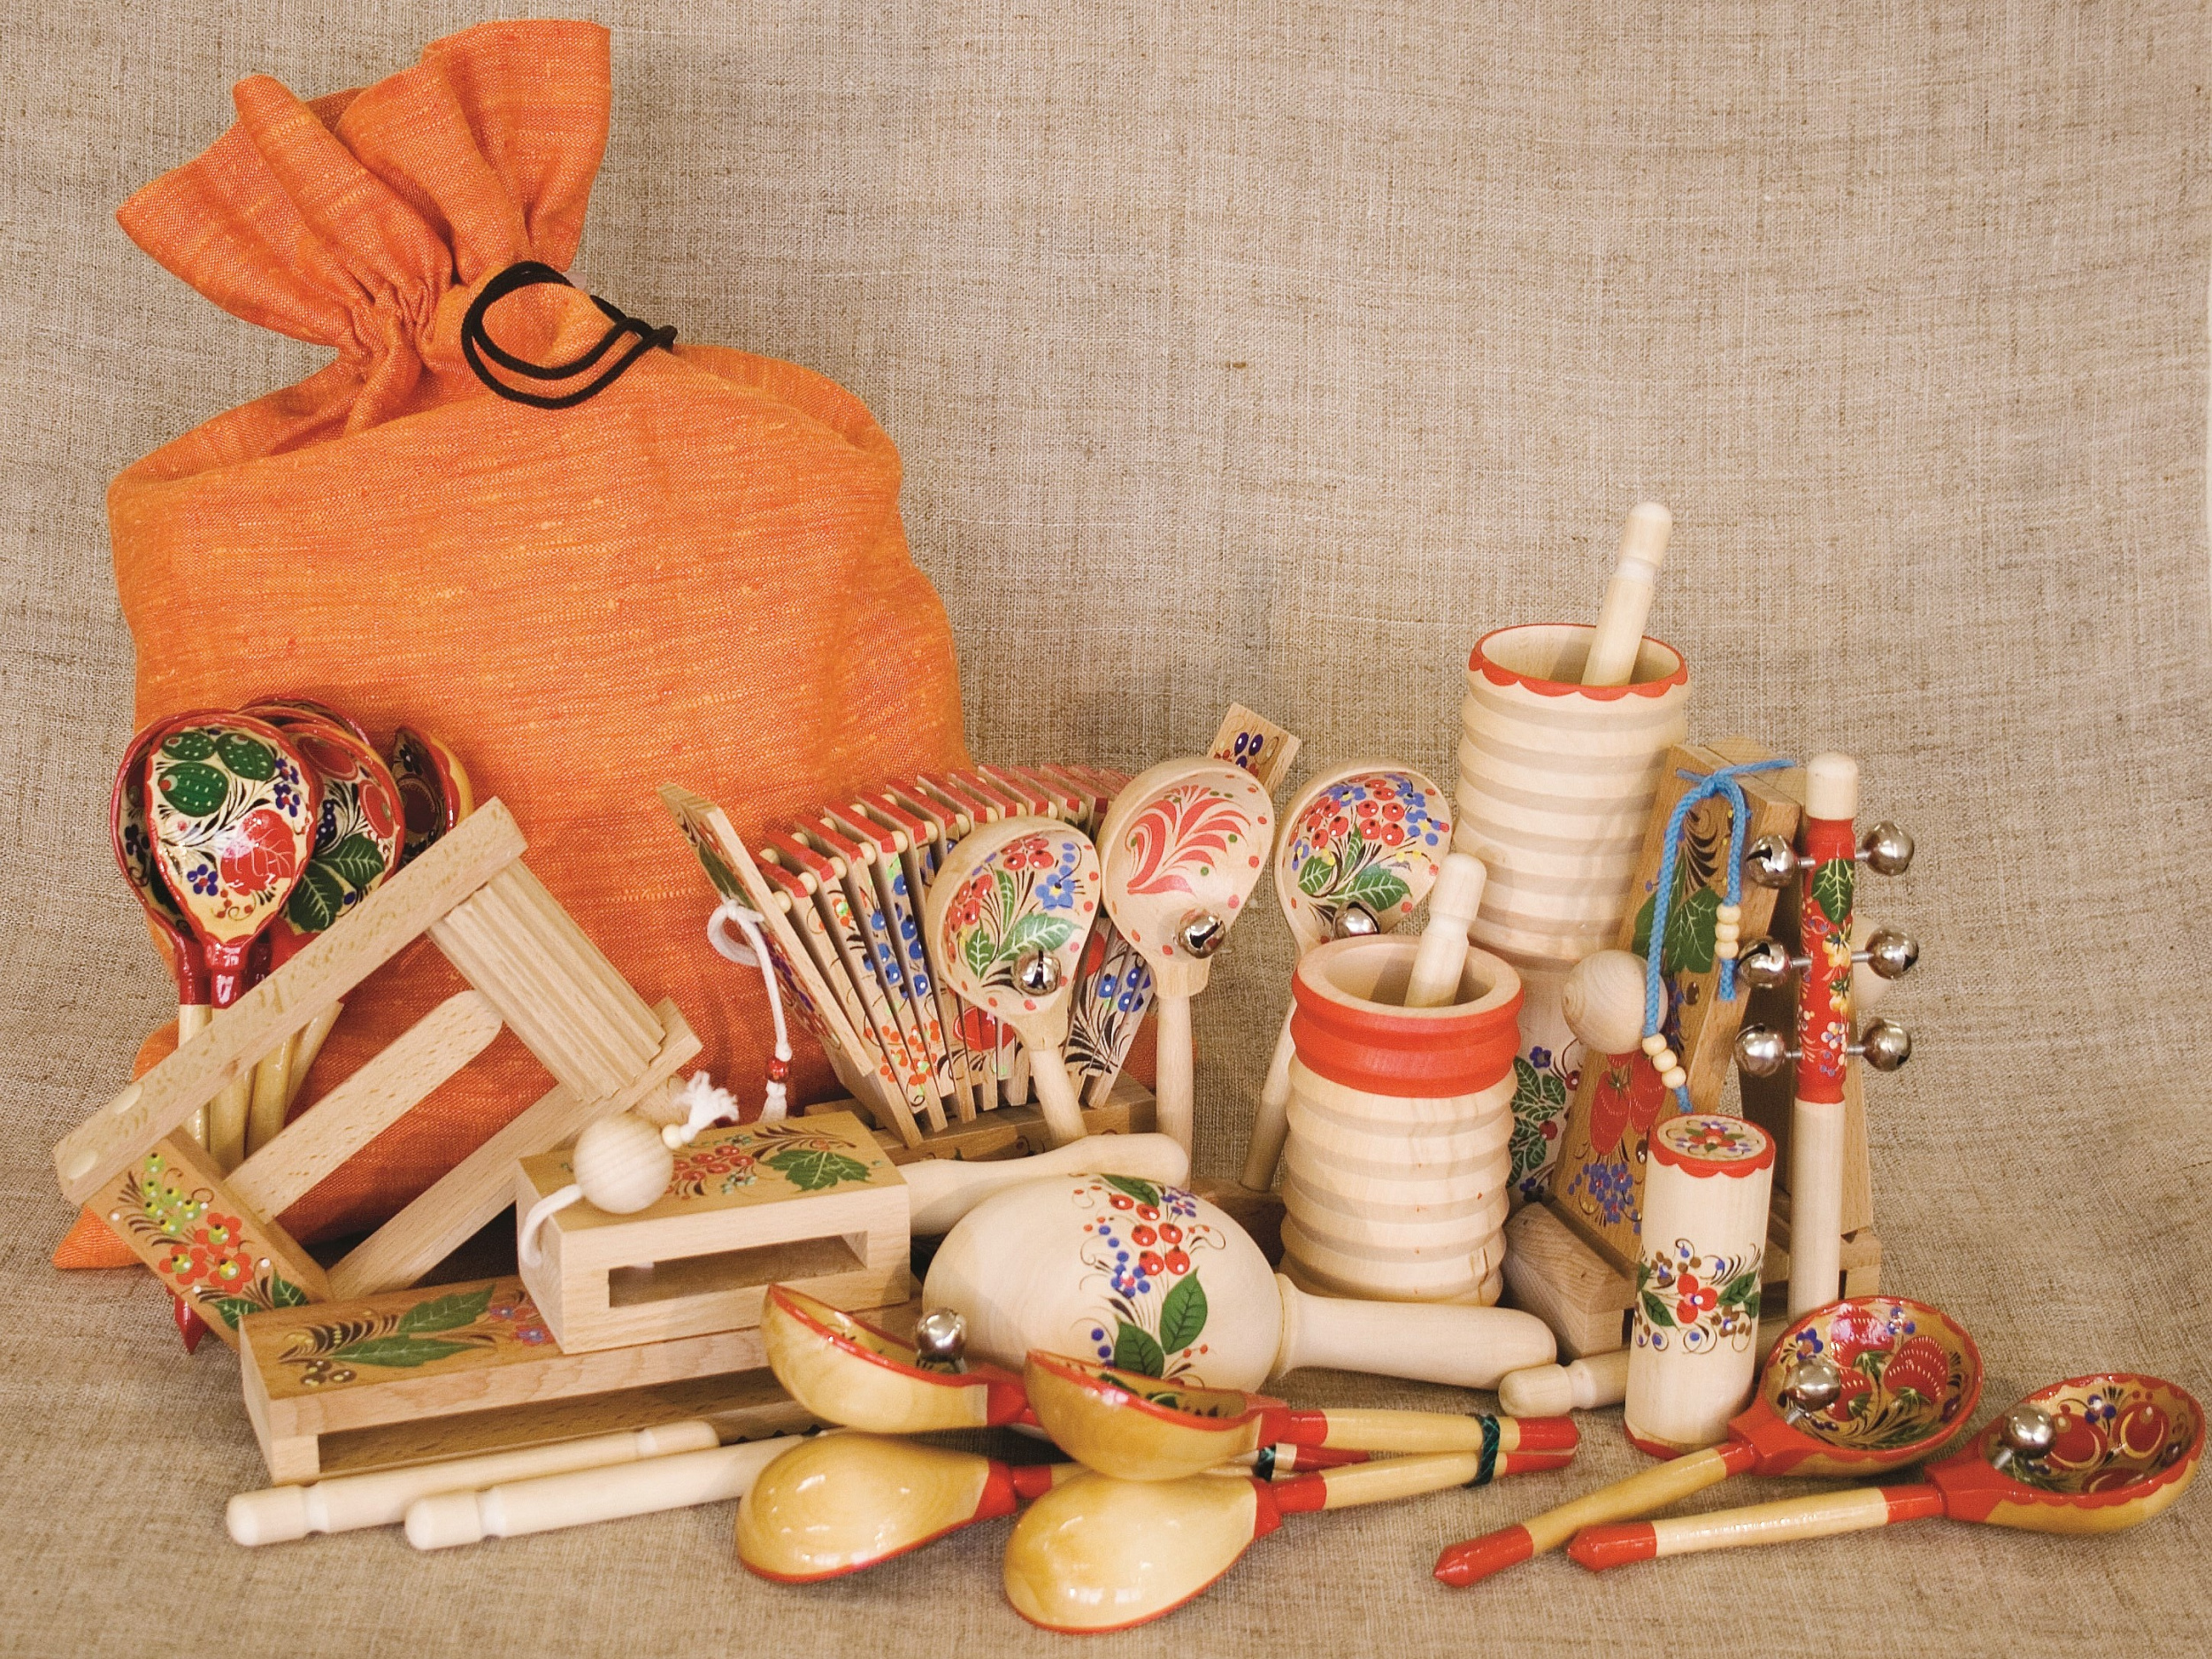 Богородские игрушки, деревянные резные, купить в Москве